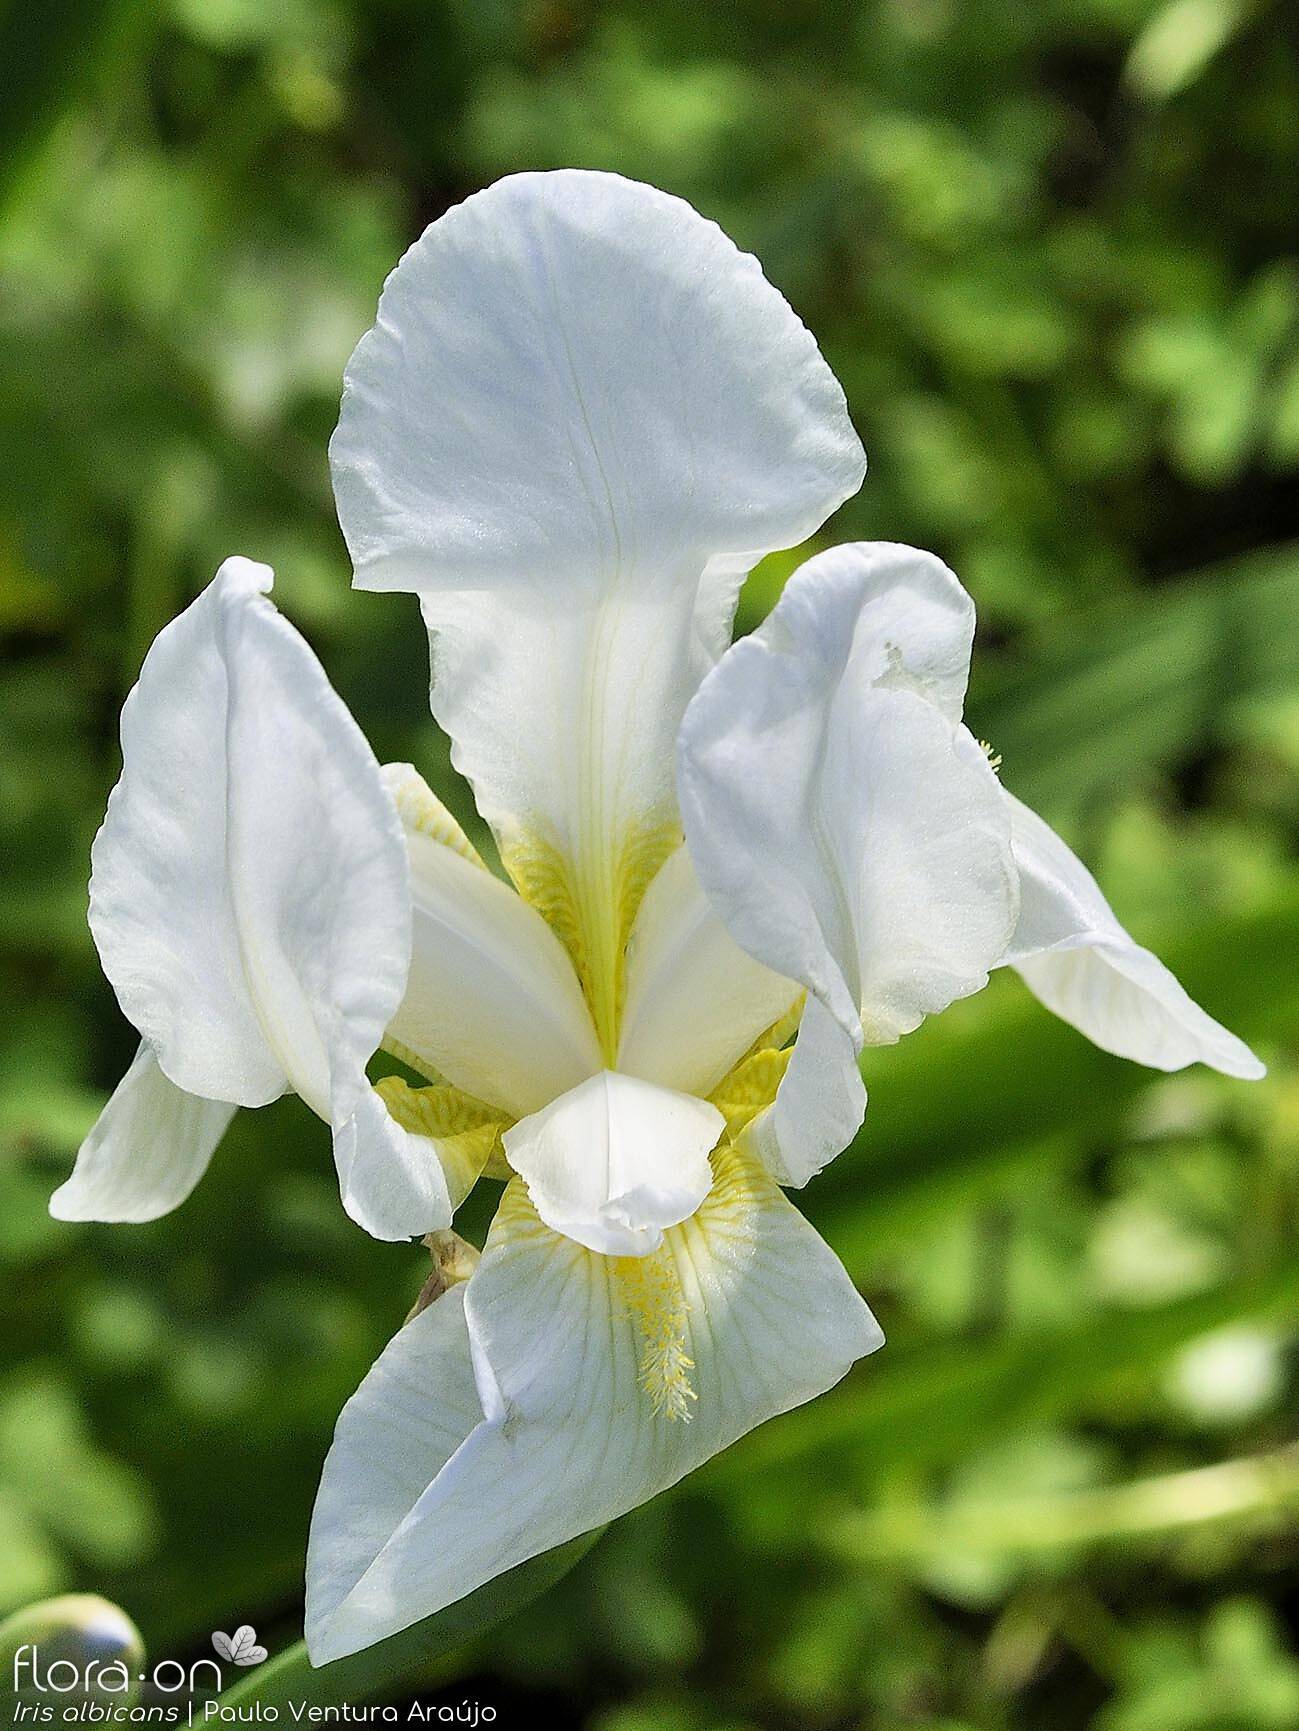 Iris albicans - Flor (close-up) | Paulo Ventura Araújo; CC BY-NC 4.0